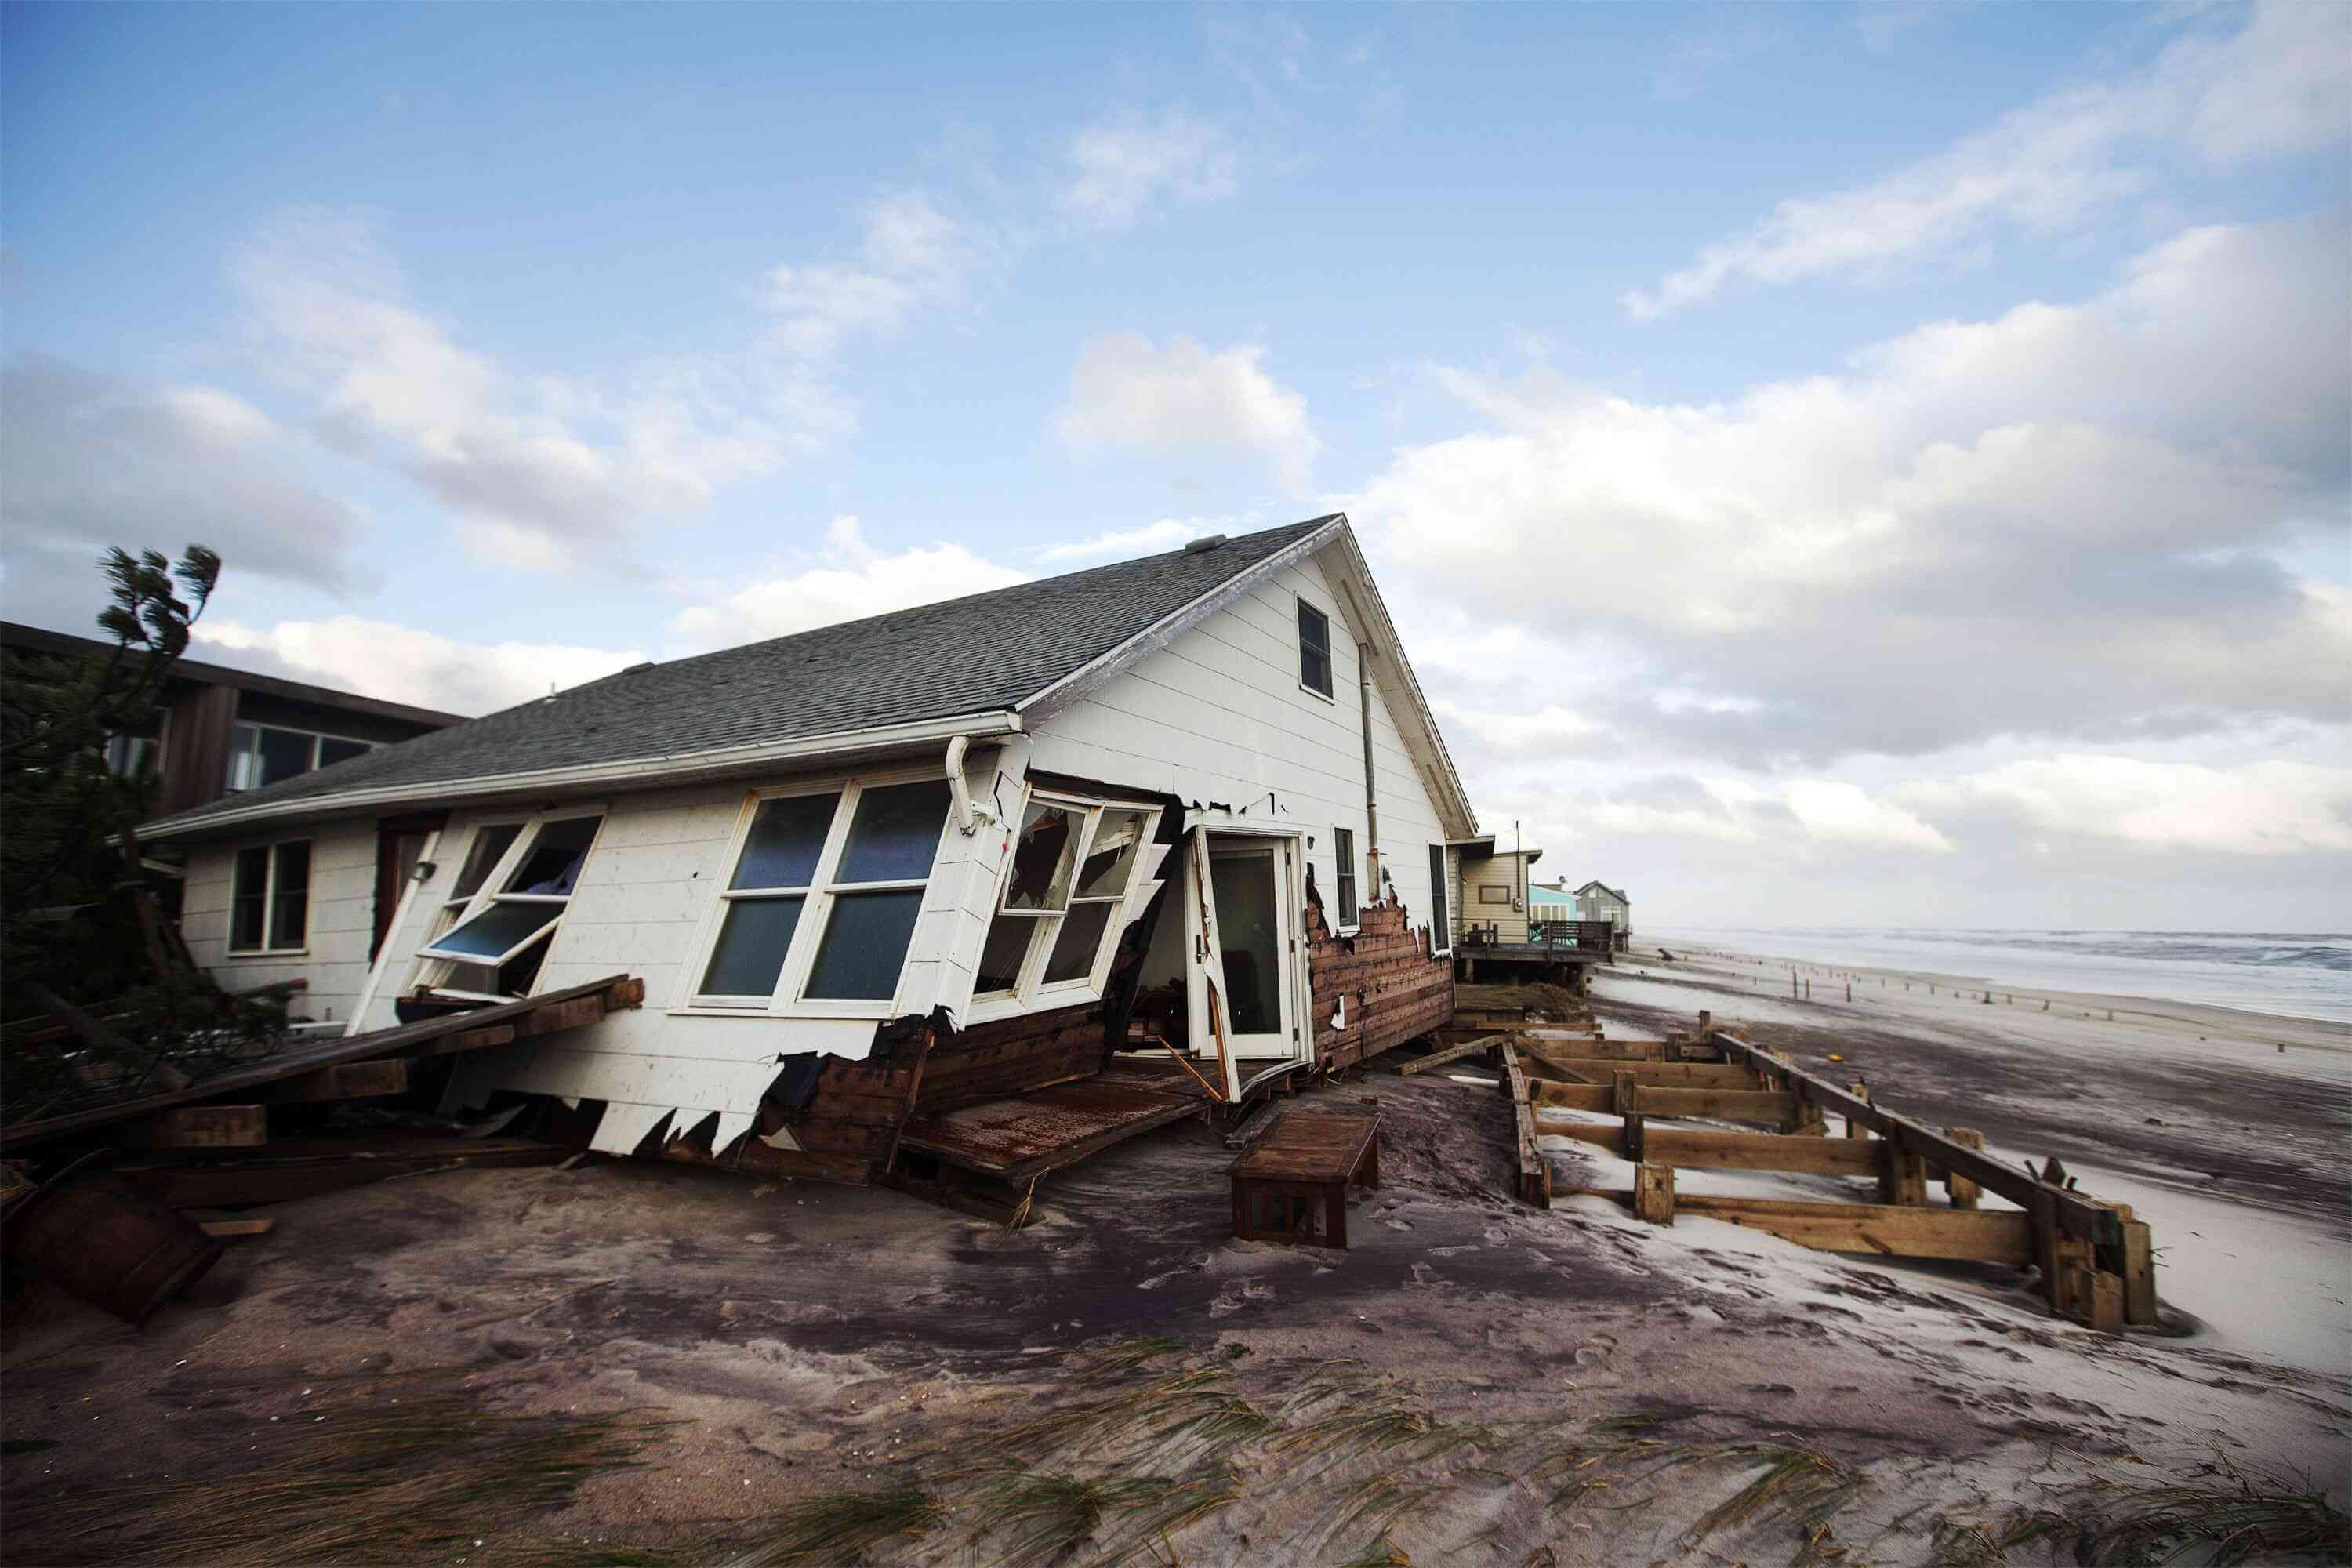 Почему дома в Америке так легко разрушить? Разрушенные дома в Америке — вполне нормальное зрелище после ураганных ветров. Фото.